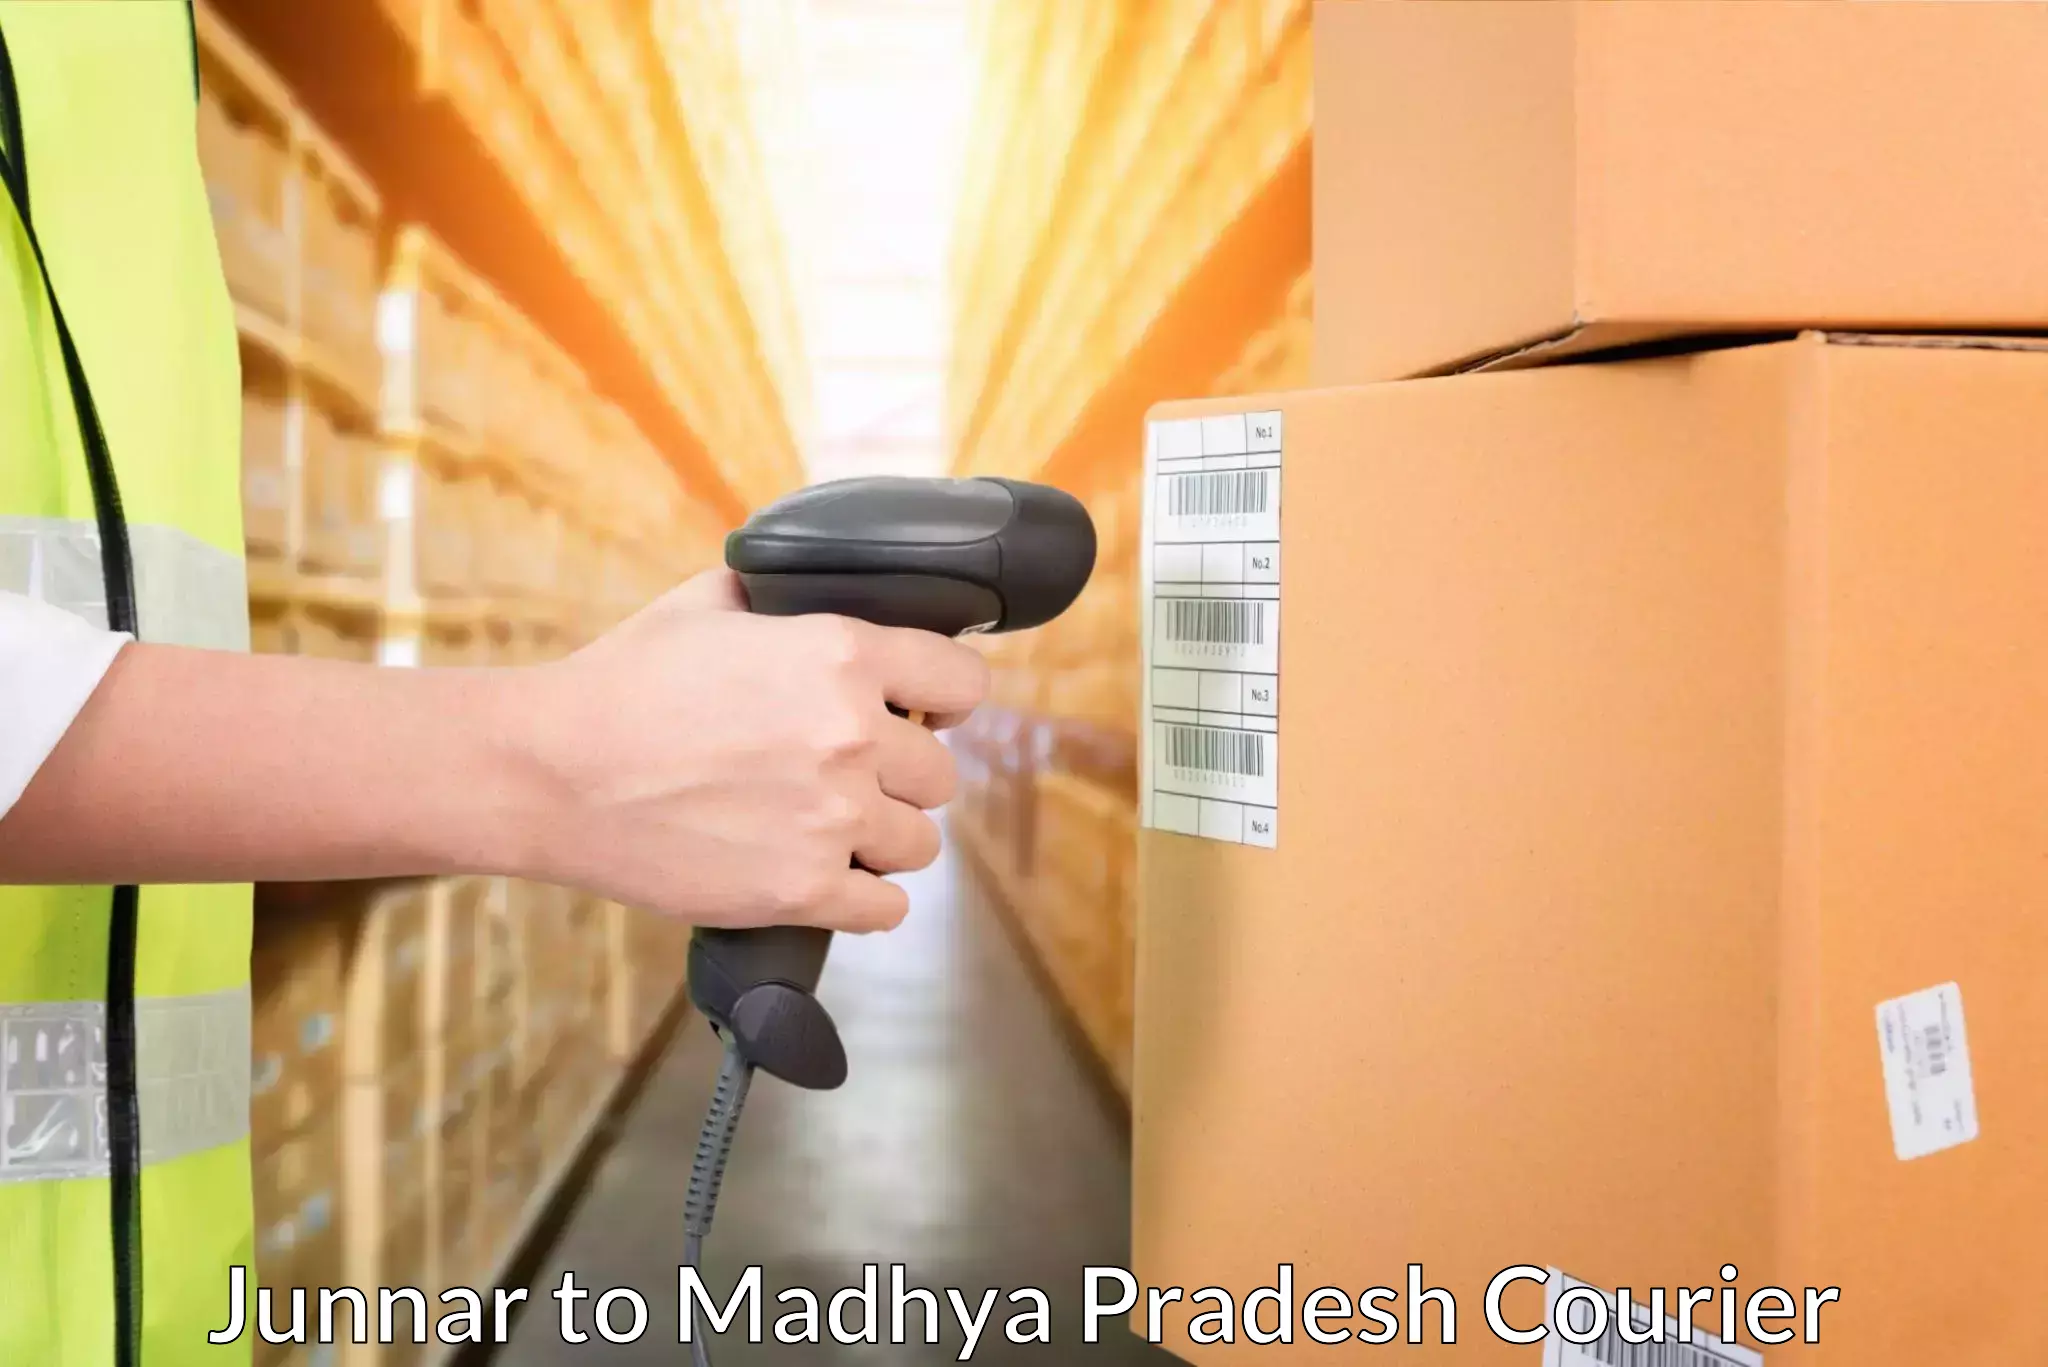 Cargo delivery service Junnar to Badnagar